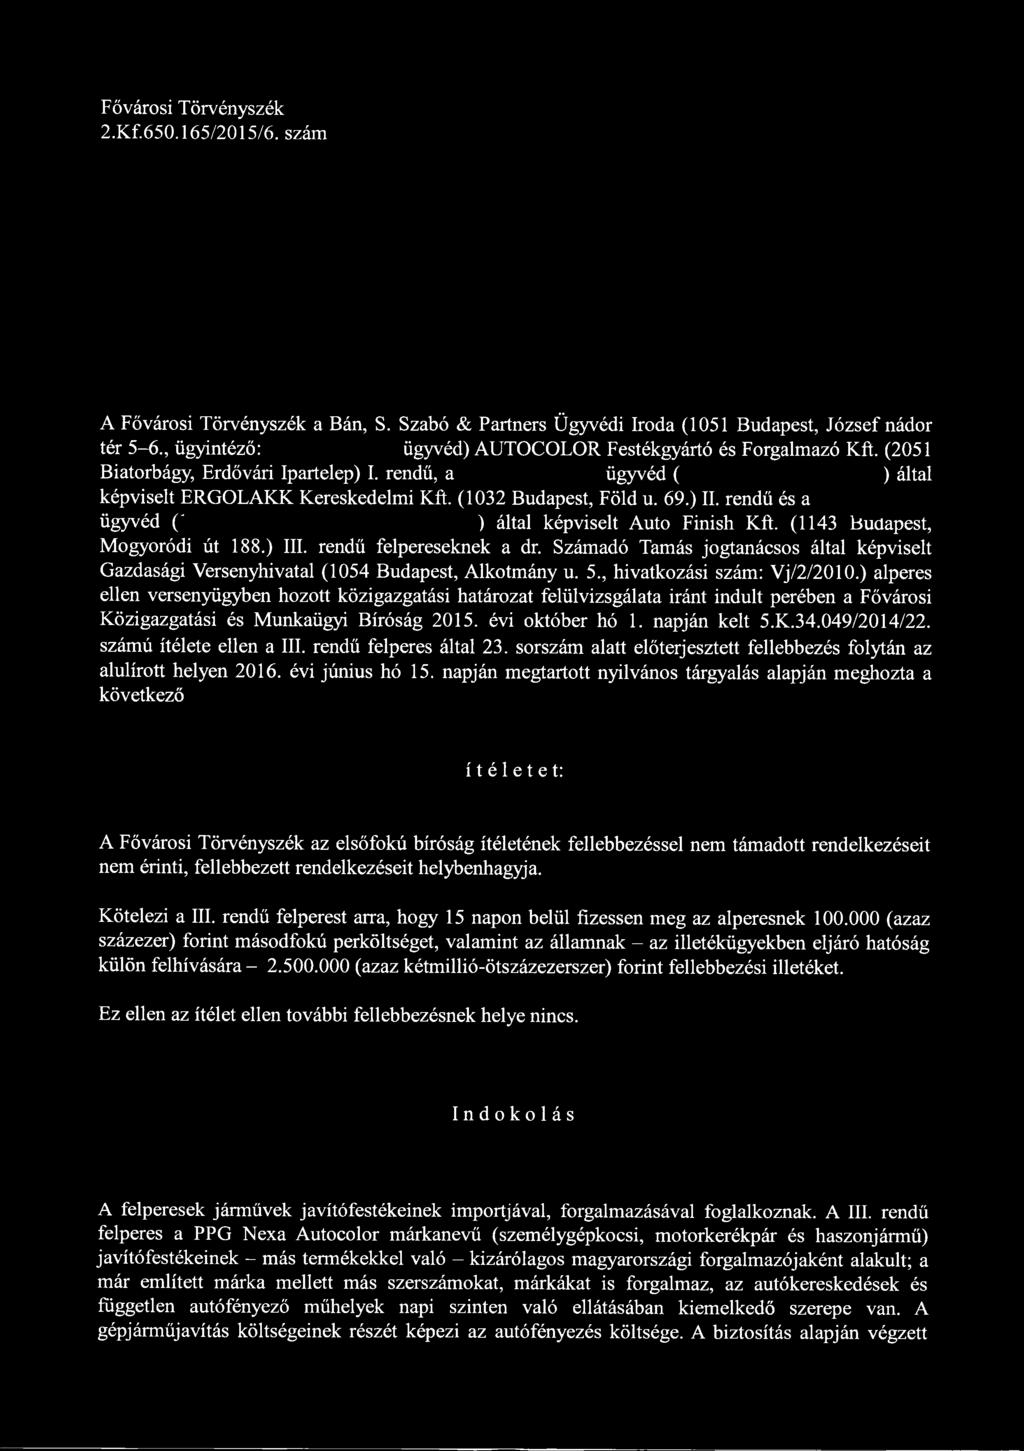 rendű és a ügyvéd (' ) által képviselt Autó Finish Kft. (1143 Budapest, Mogyoródi út 188.) III. rendű felpereseknek a dr.